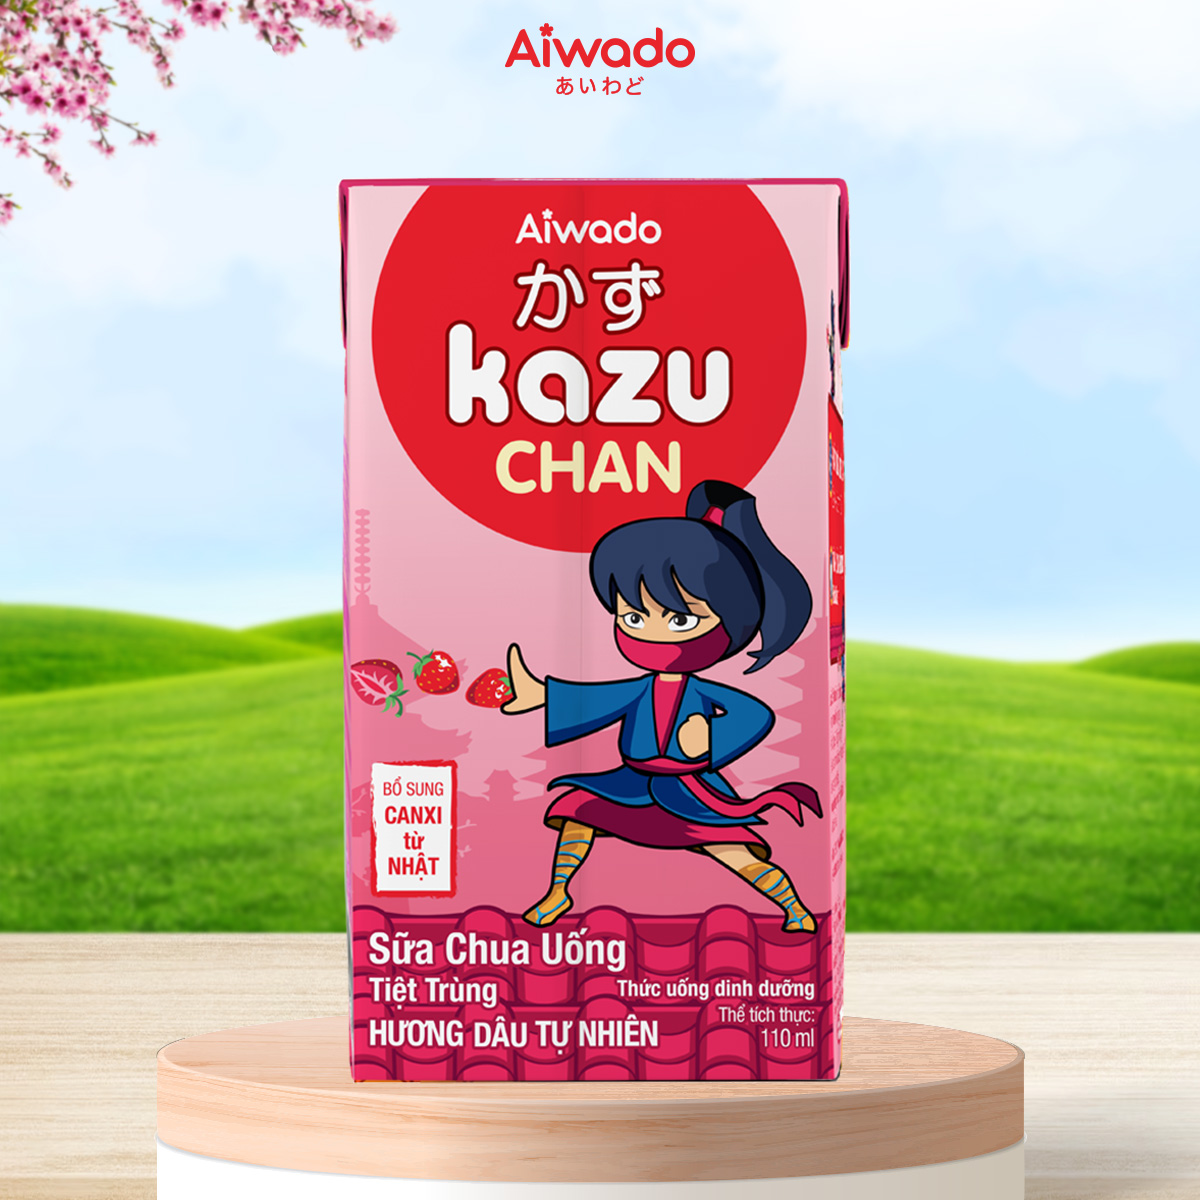 Sữa chua uống Aiwado Kazu Chan - hương Dâu tự nhiên